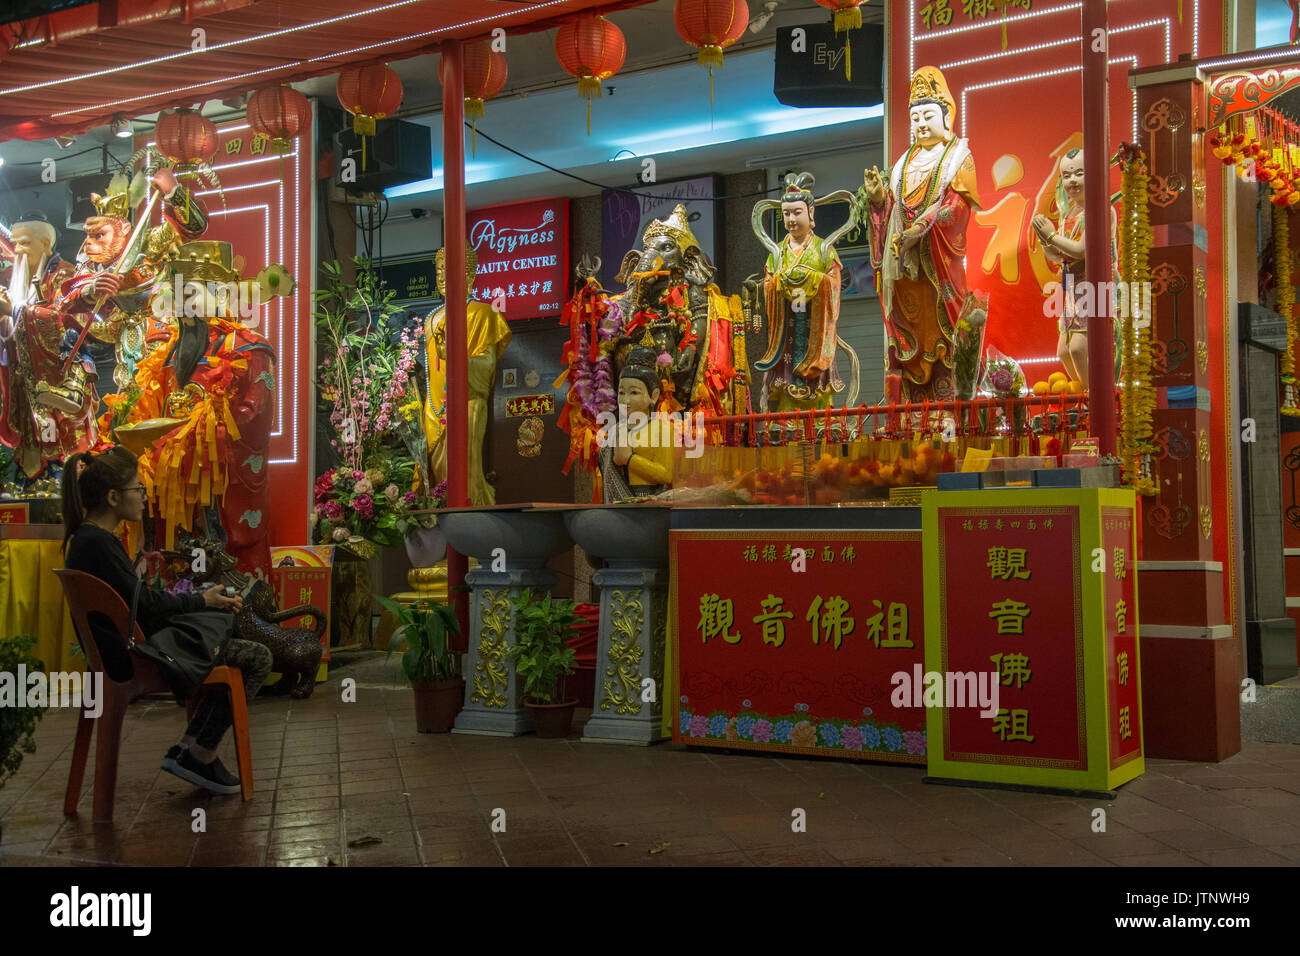 Chinesische Frau erwägt die vergoldeten Statuen des legendären und mythischen Helden auf der Waterloo Street angezeigt, Singapur Stockfoto